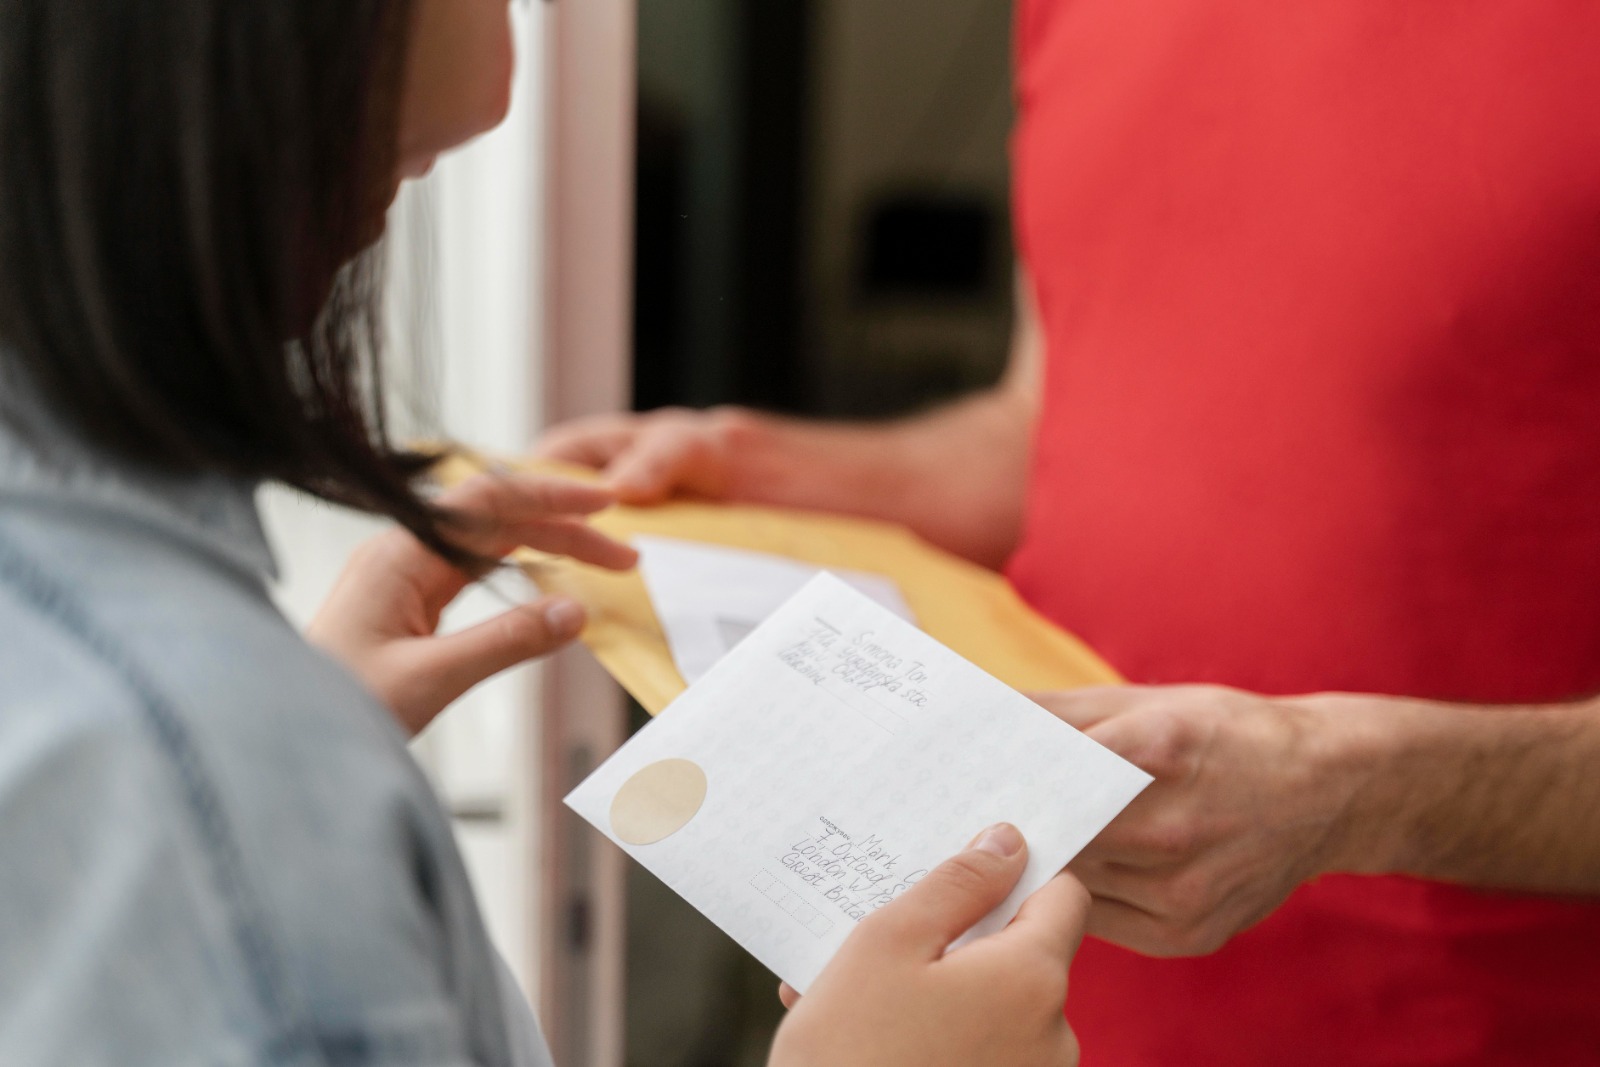 Uma pessoa recebendo um envelope amarelo e um papel com informações escritas, possivelmente relacionadas à Anuidade do creci.